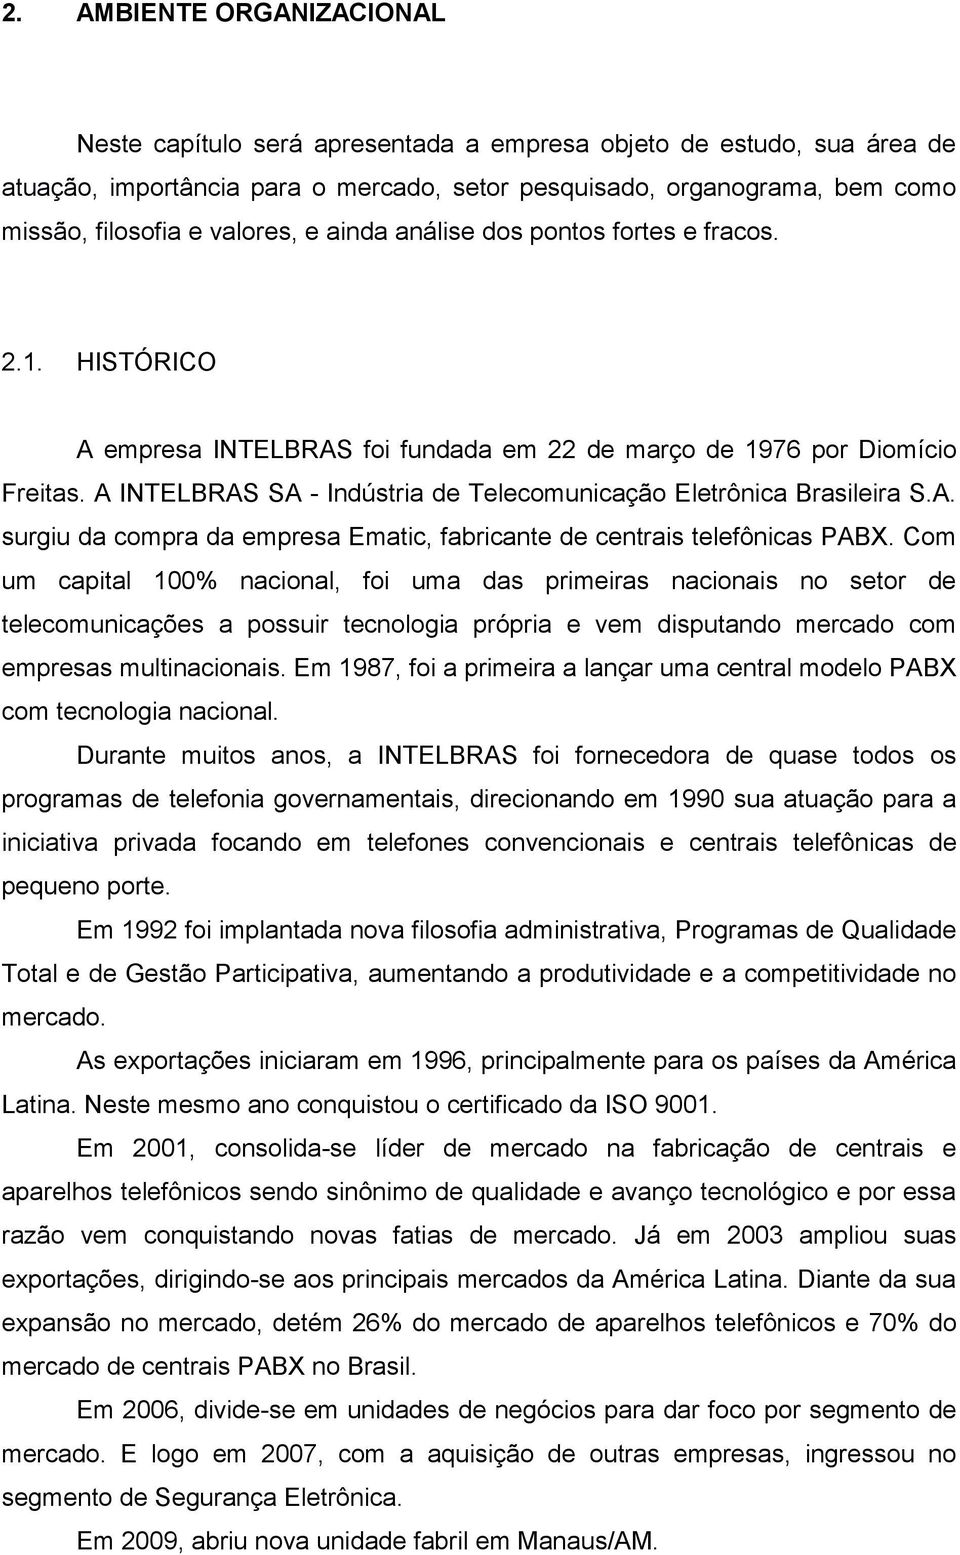 A INTELBRAS SA - Indústria de Telecomunicação Eletrônica Brasileira S.A. surgiu da compra da empresa Ematic, fabricante de centrais telefônicas PABX.